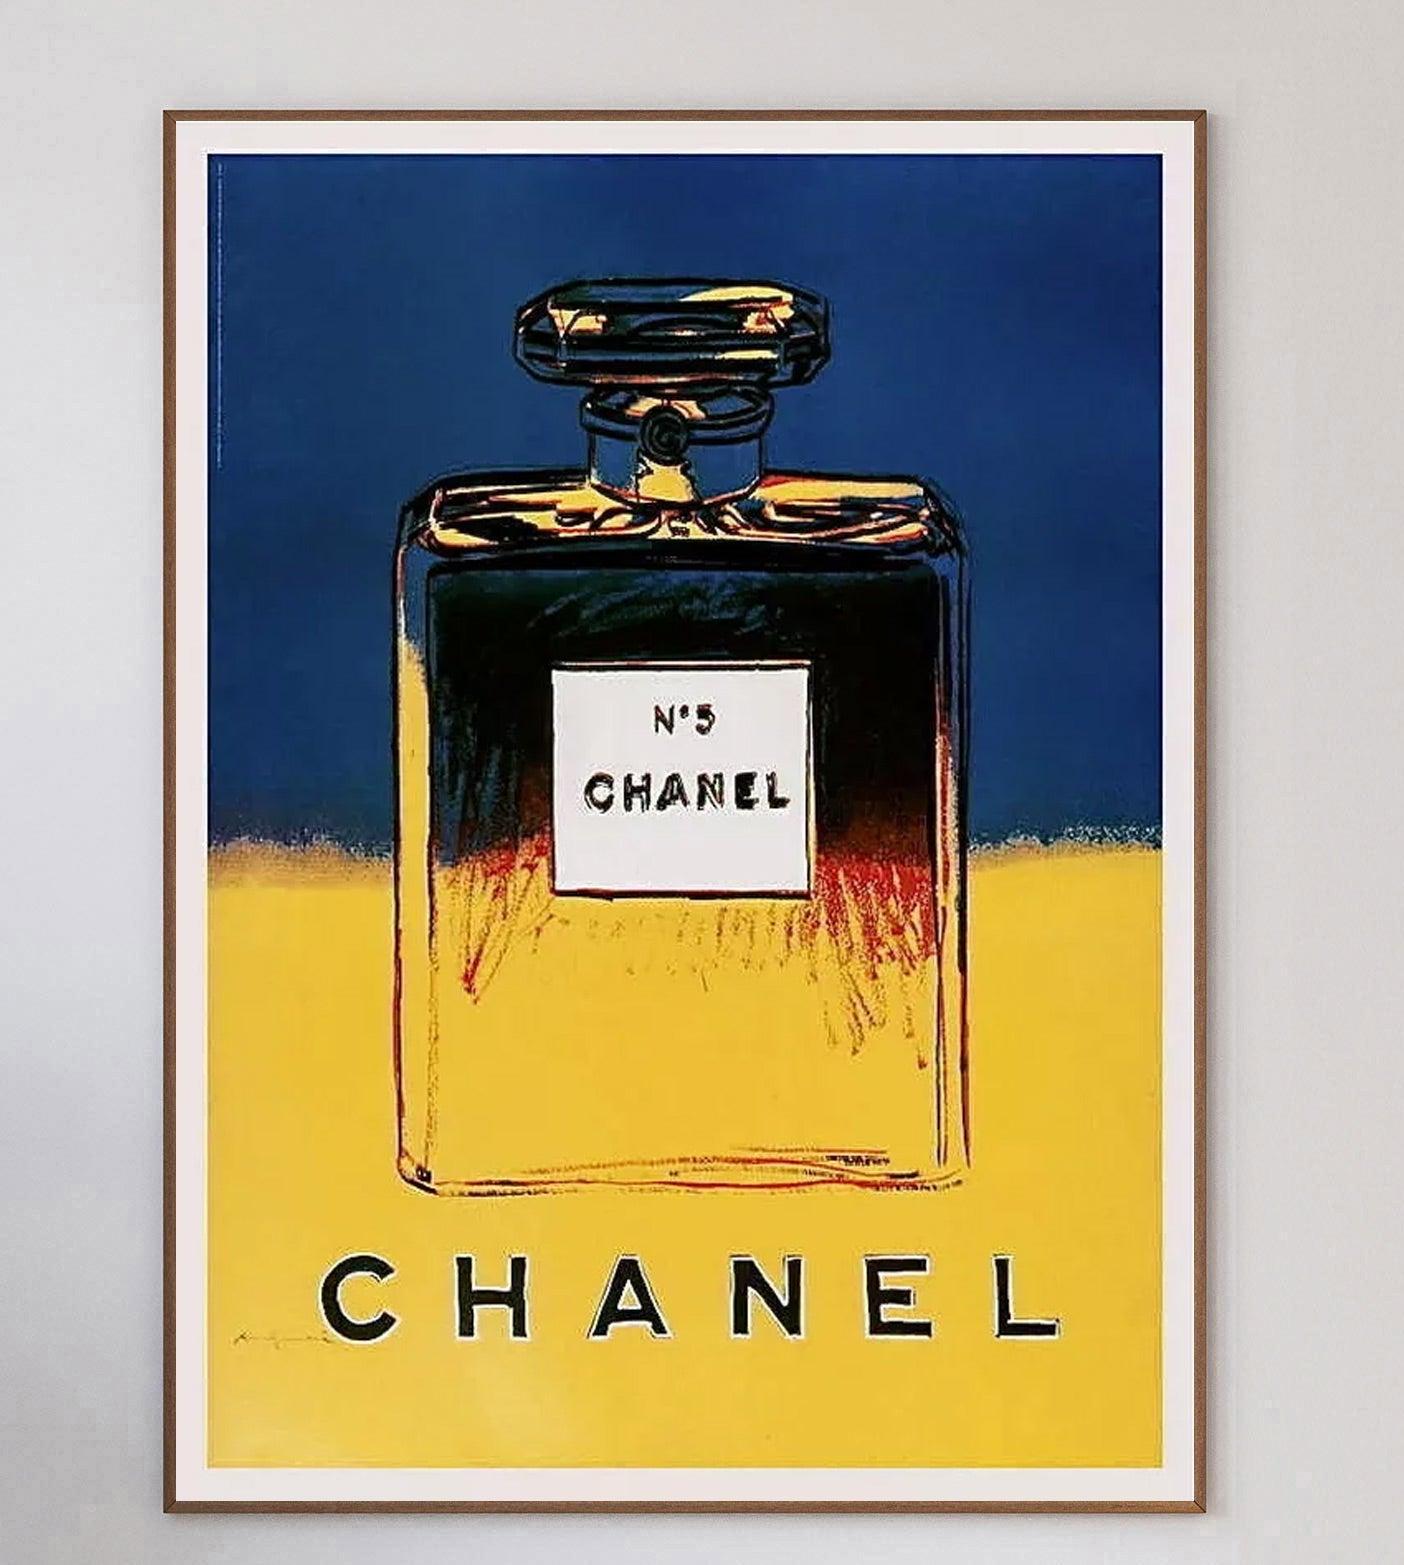 Eine wahrhaft ikonische Collaboration zwischen Andy Warhol und Chanel no.5 begann 1985, als Warhol eine Auswahl von Siebdrucken als Teil seiner ADS-Serie produzierte. Die Stücke wurden dann von Chanel als Teil einer breiteren Werbekampagne im Jahr